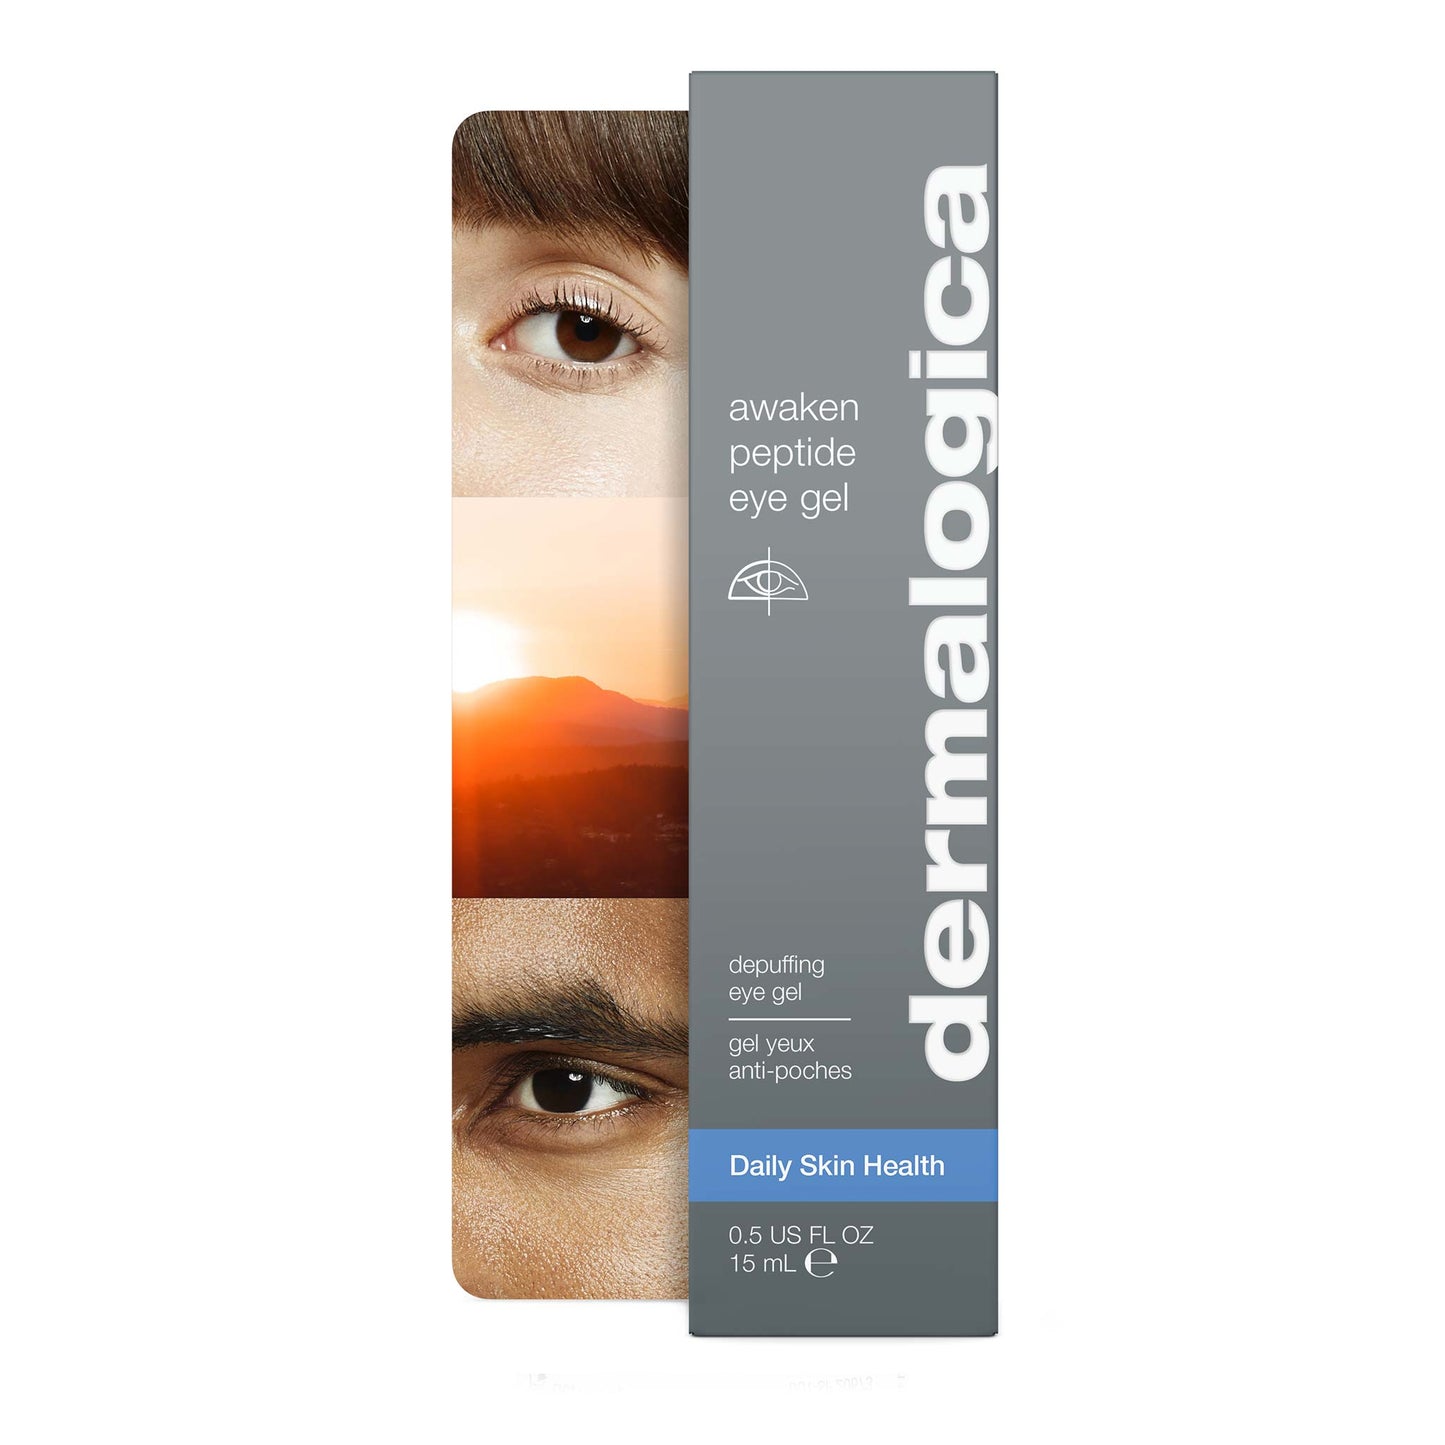 awaken peptide eye gel front of carton